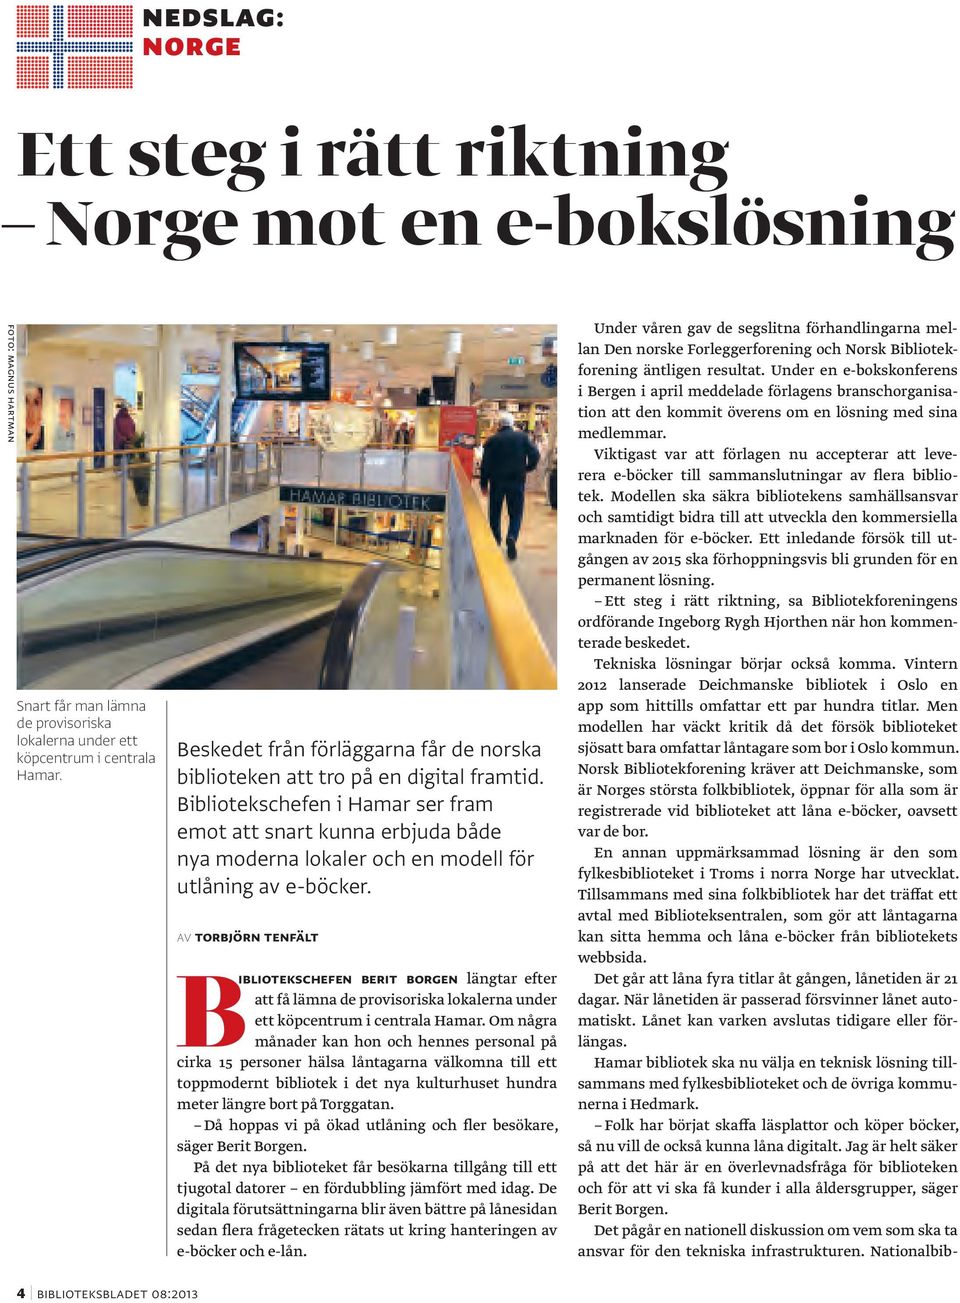 Bibliotekschefen i Hamar ser fram emot att snart kunna erbjuda både nya moderna lokaler och en modell för utlåning av e-böcker.